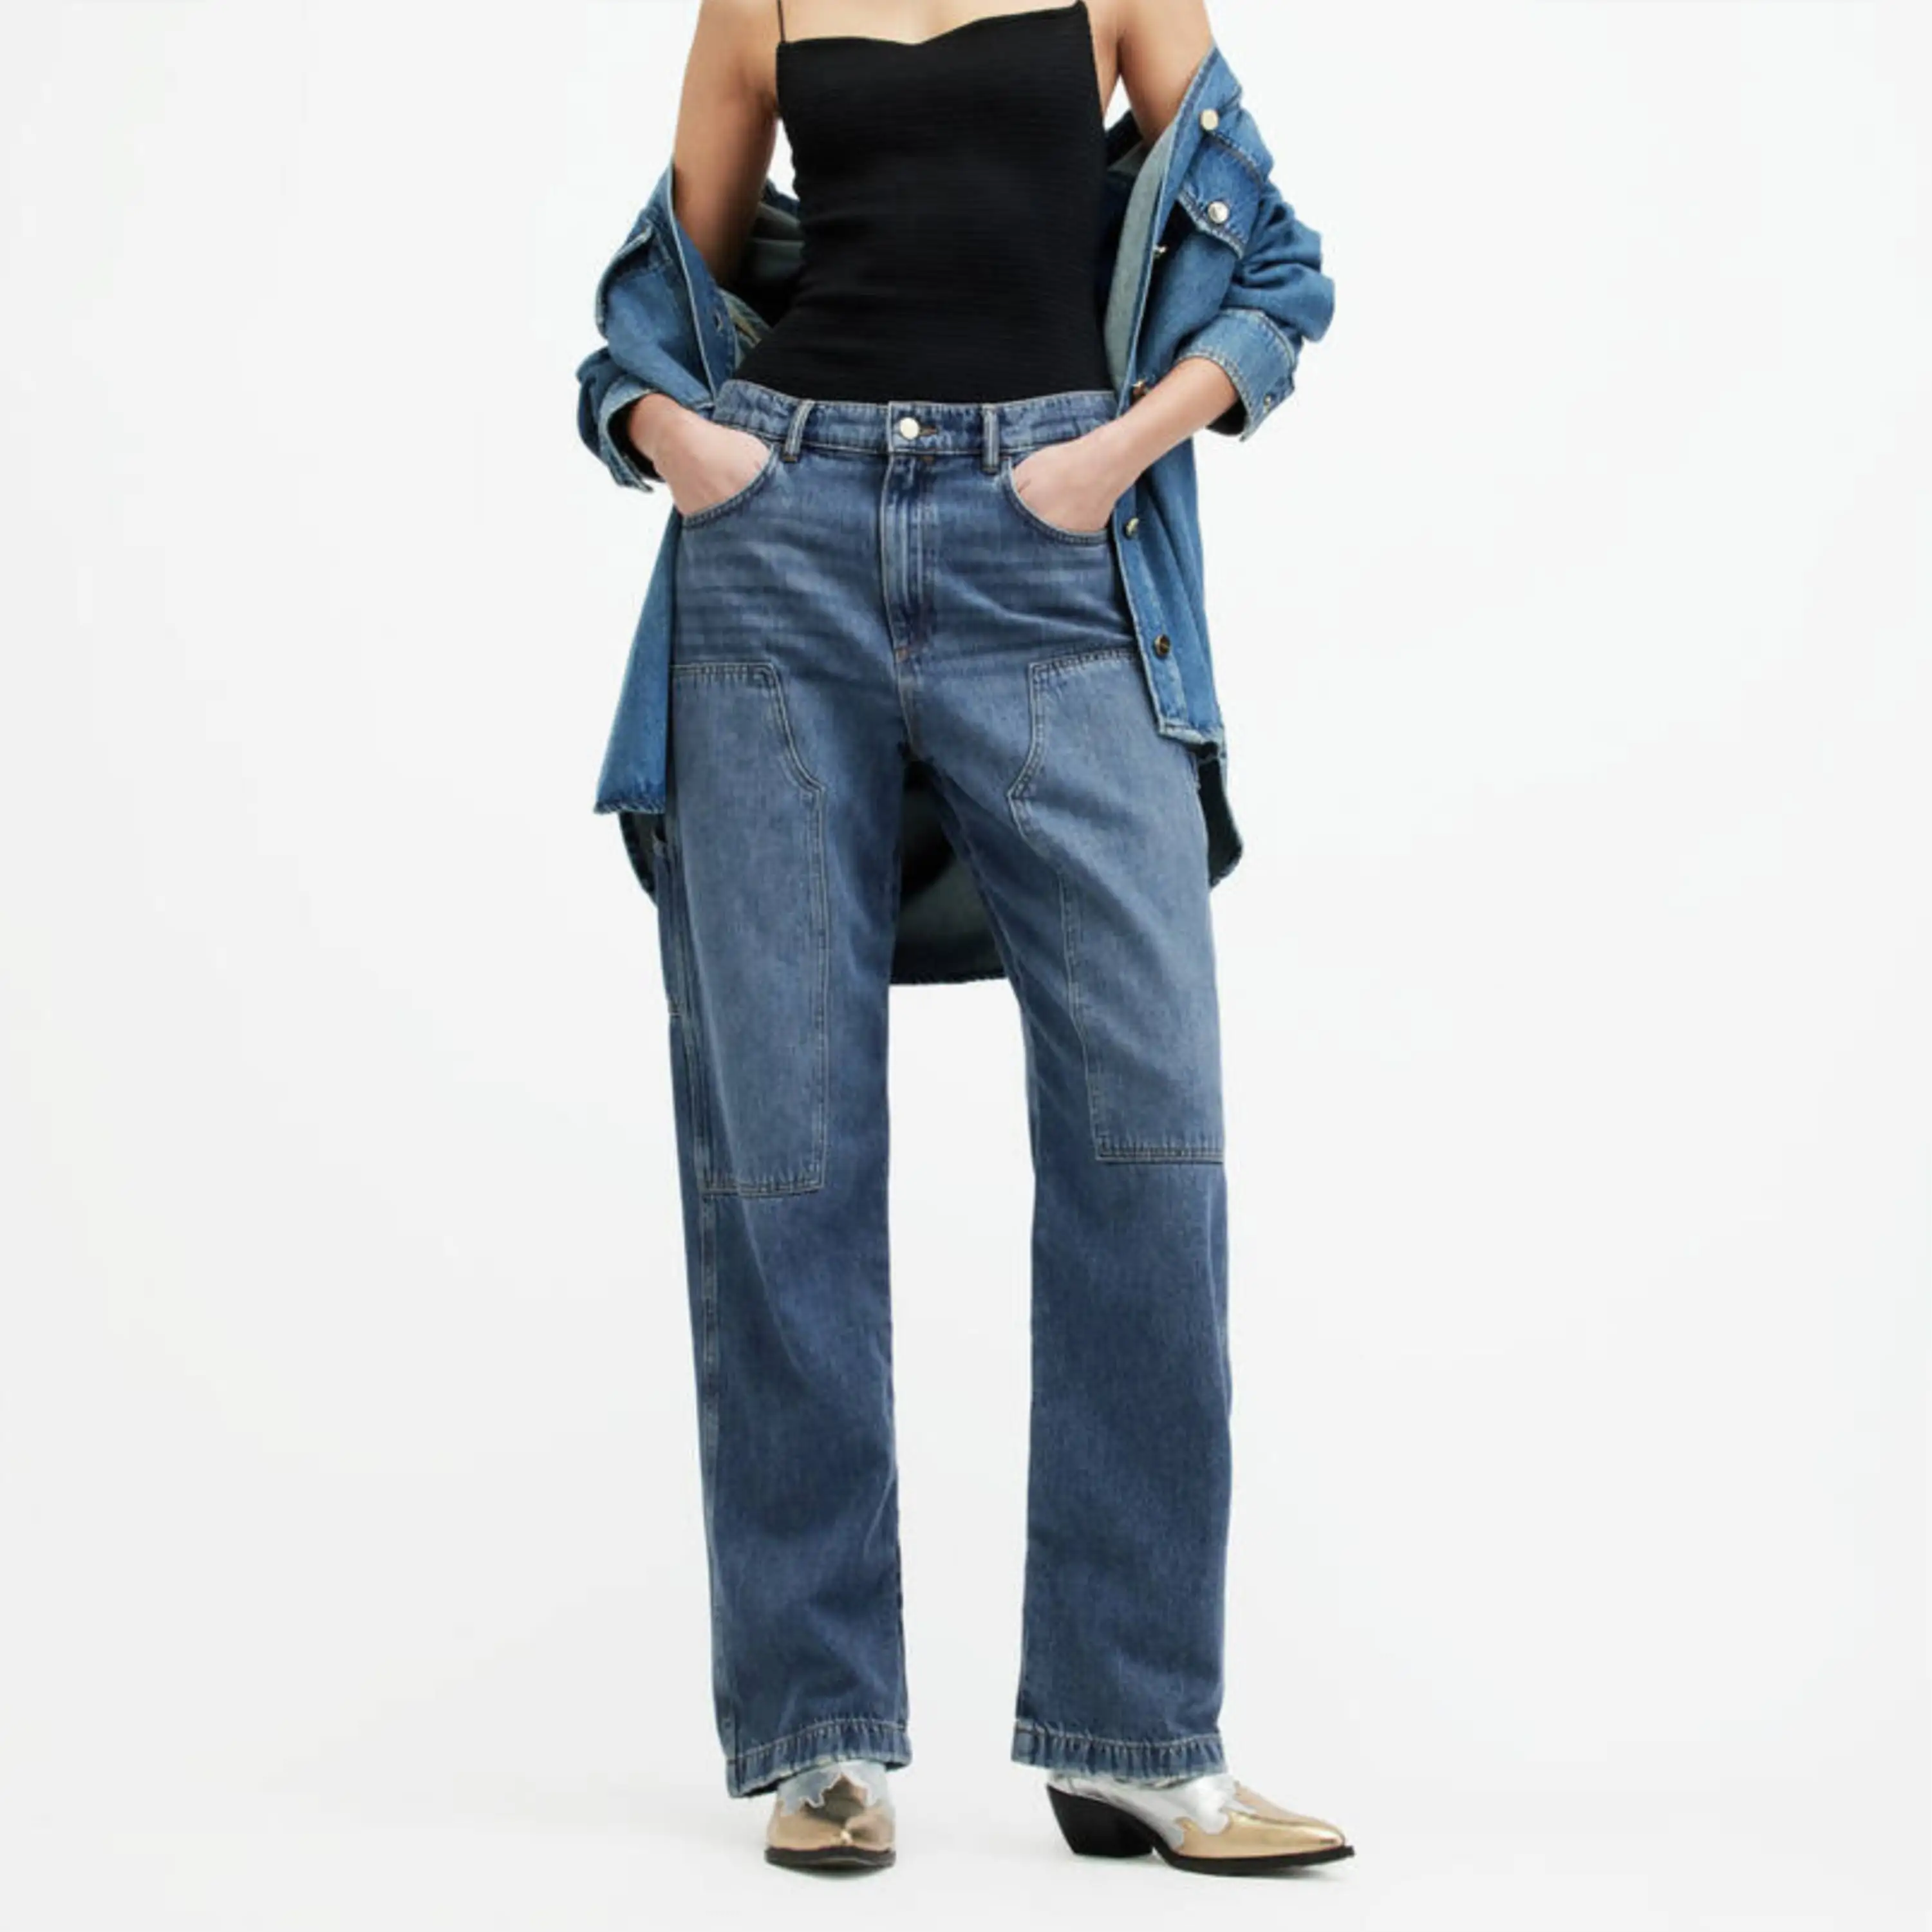 Premium kalite kadın geniş bacak Denim kot pantolon moda tasarım fermuar Fly Denim kot kadınlar için ihracat ucuz fiyat